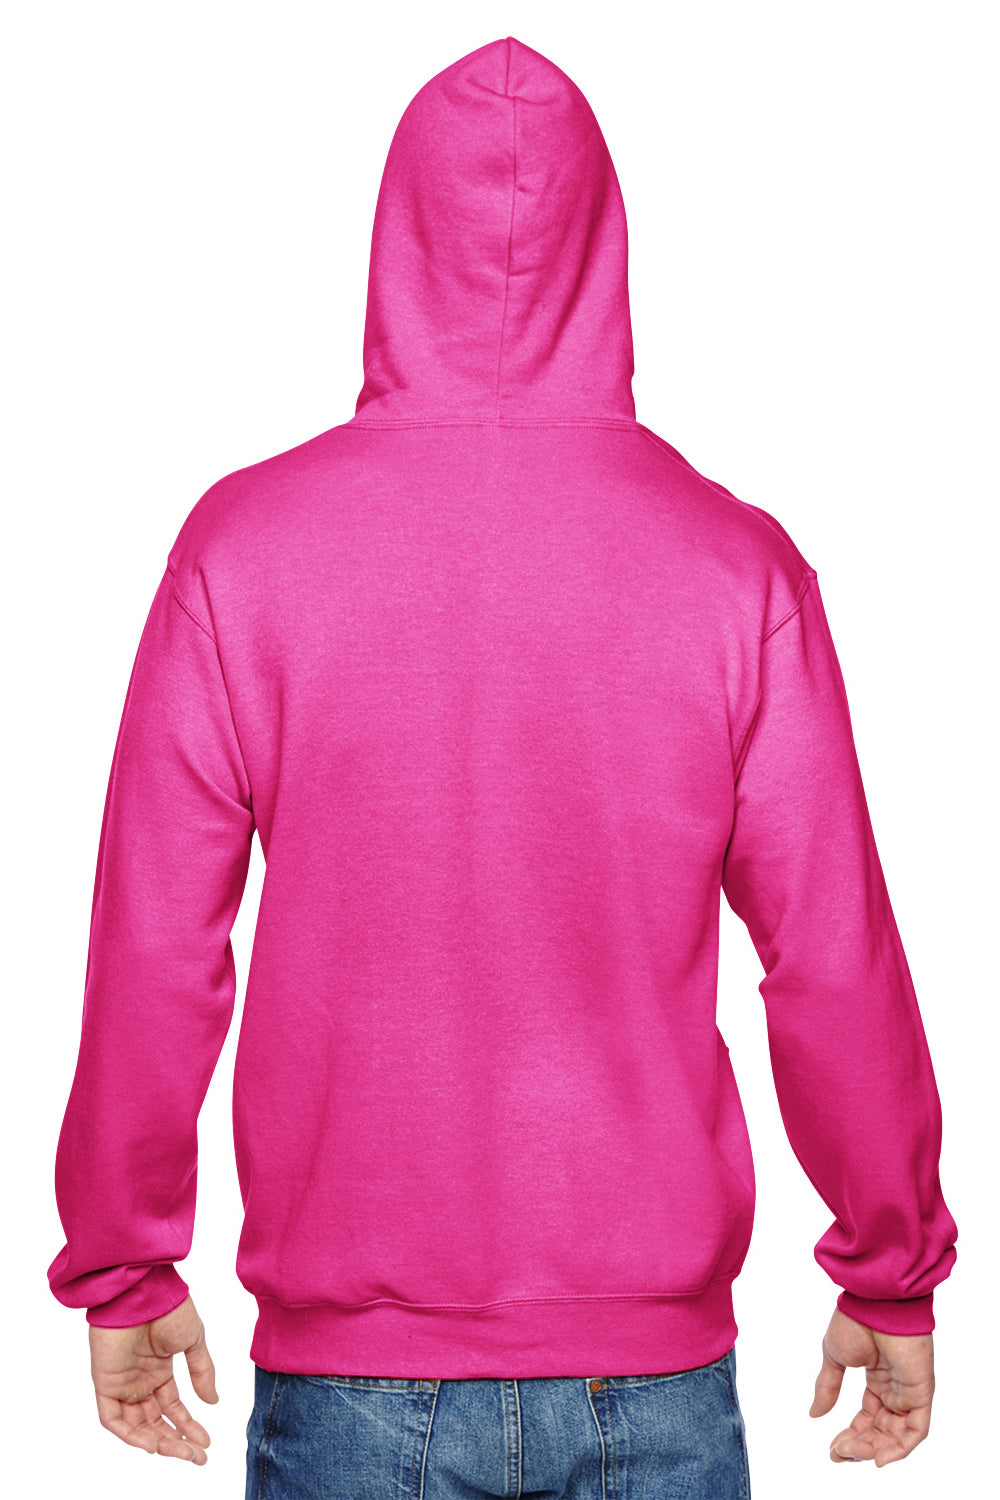 Fruit Of The Loom SF76R Mens Sofspun Hooded Sweatshirt Hoodie Cyber Pink Back